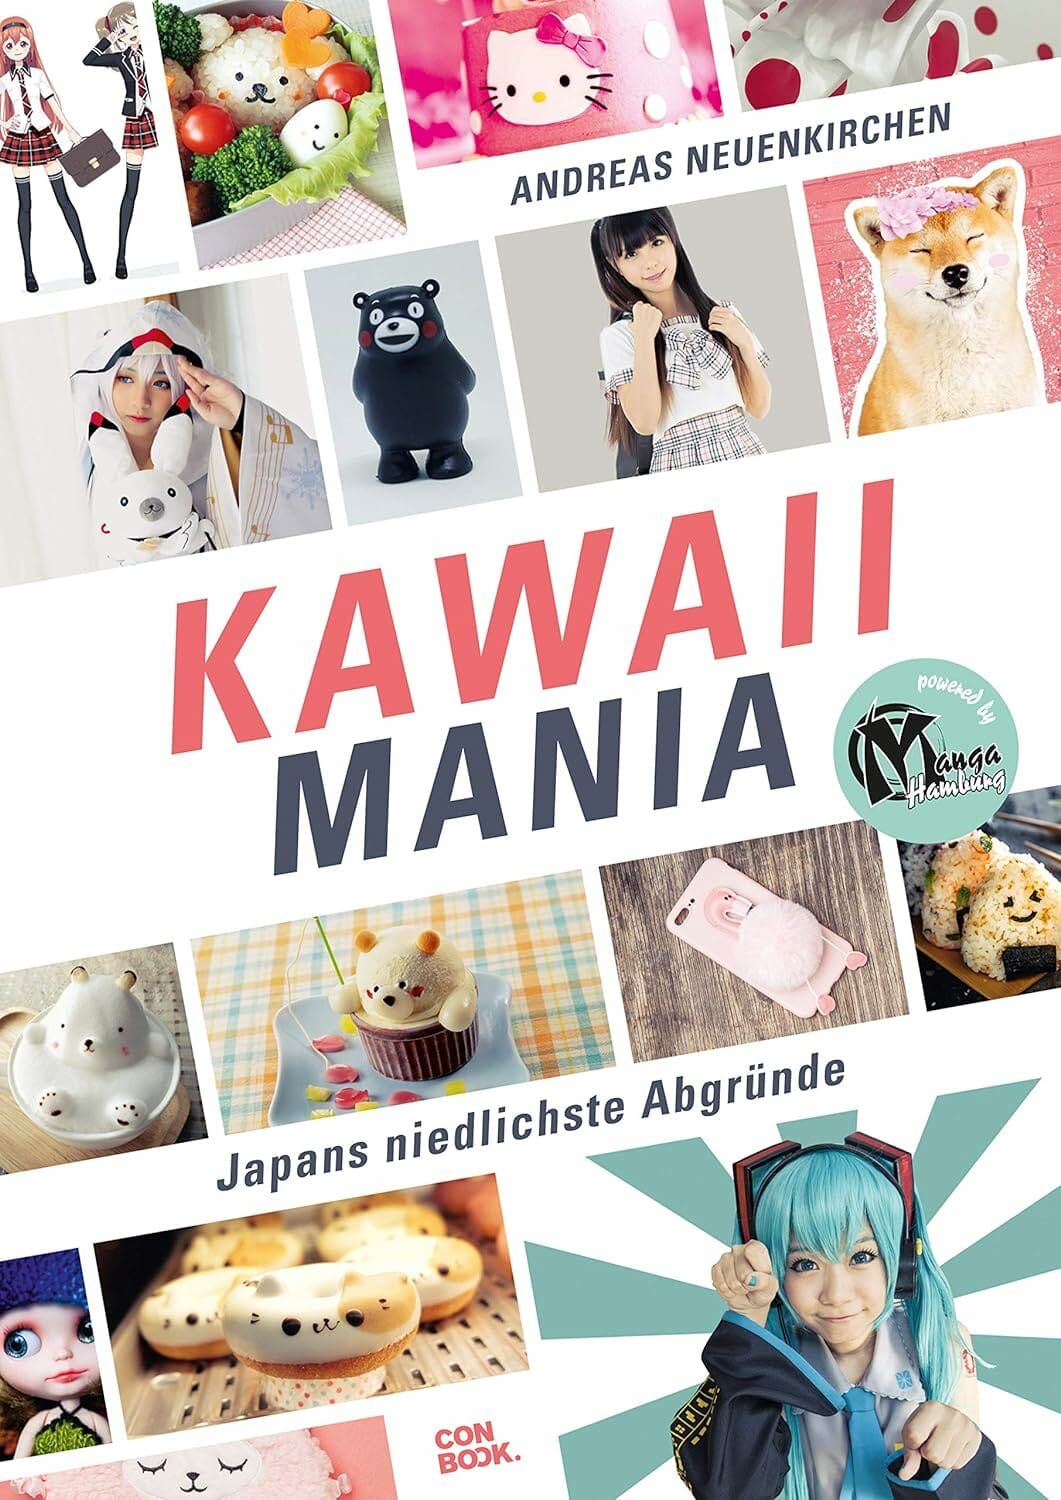 Kawaii Mania: Japans niedlichste Abgründe (Das Buch zum süßesten Trend aus Japan) von Andreas Neuenkirchen